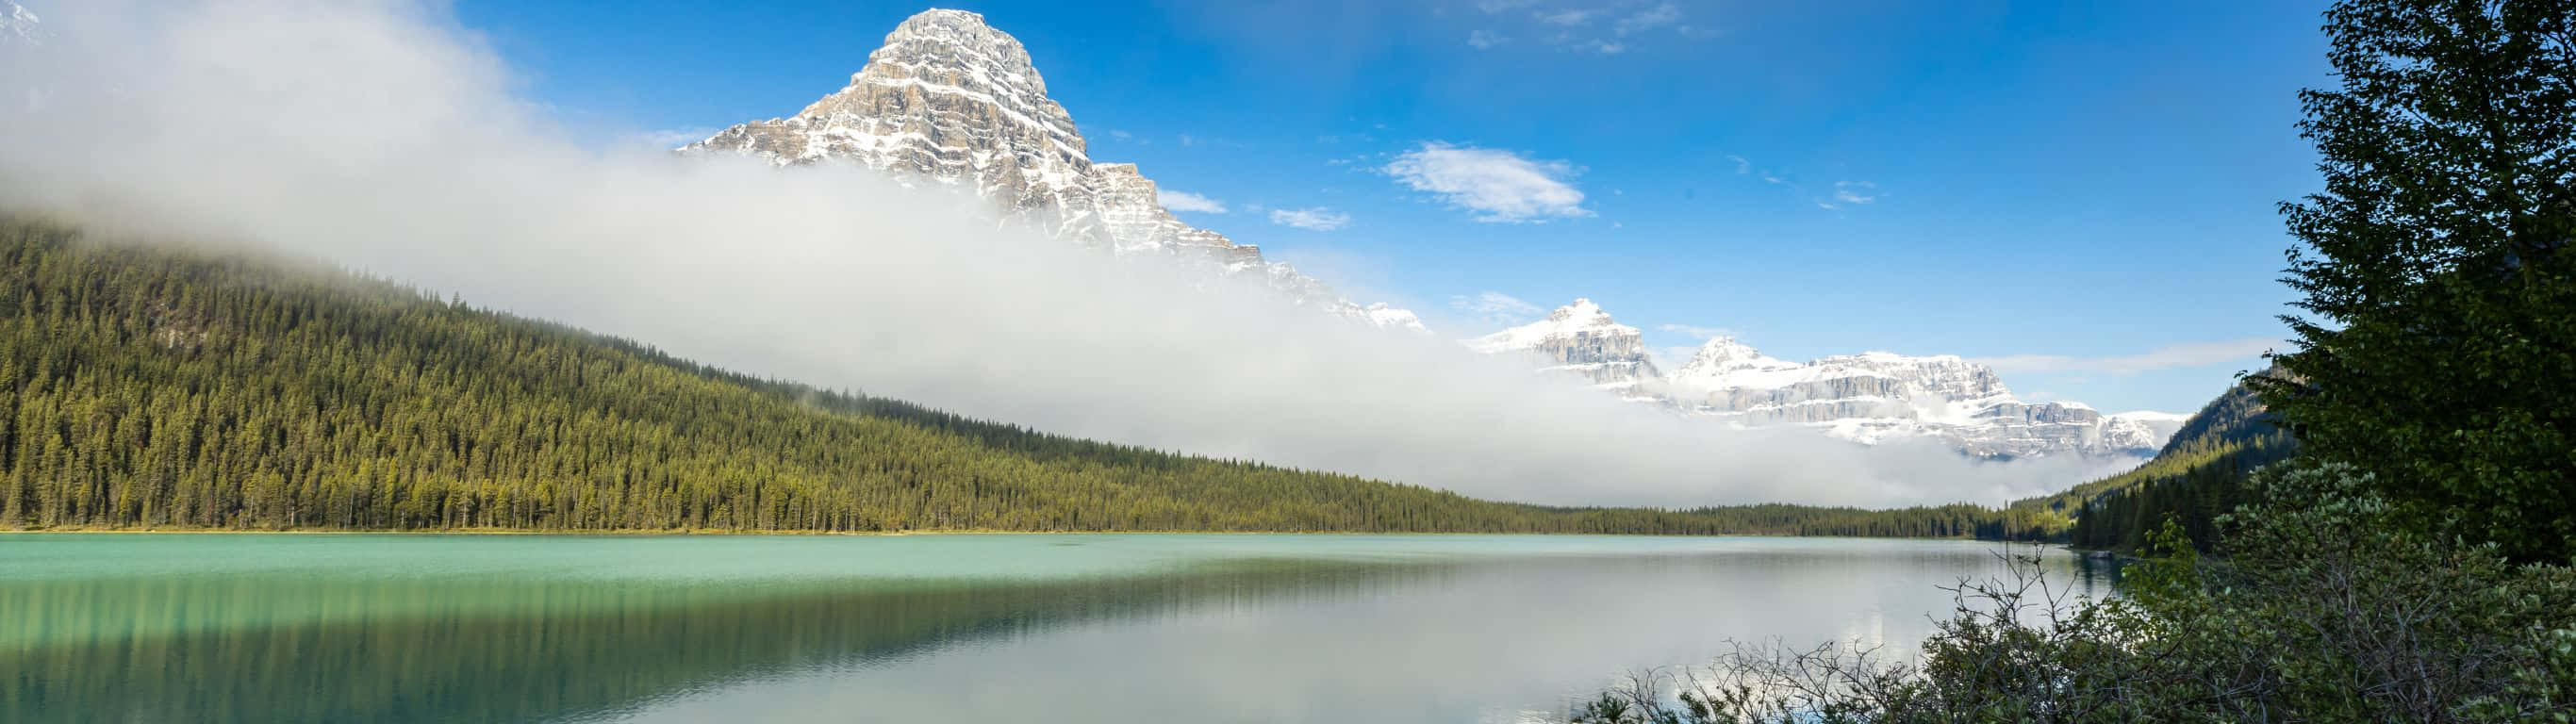 Unamontaña Reflejada En Un Lago Con Nubes Fondo de pantalla